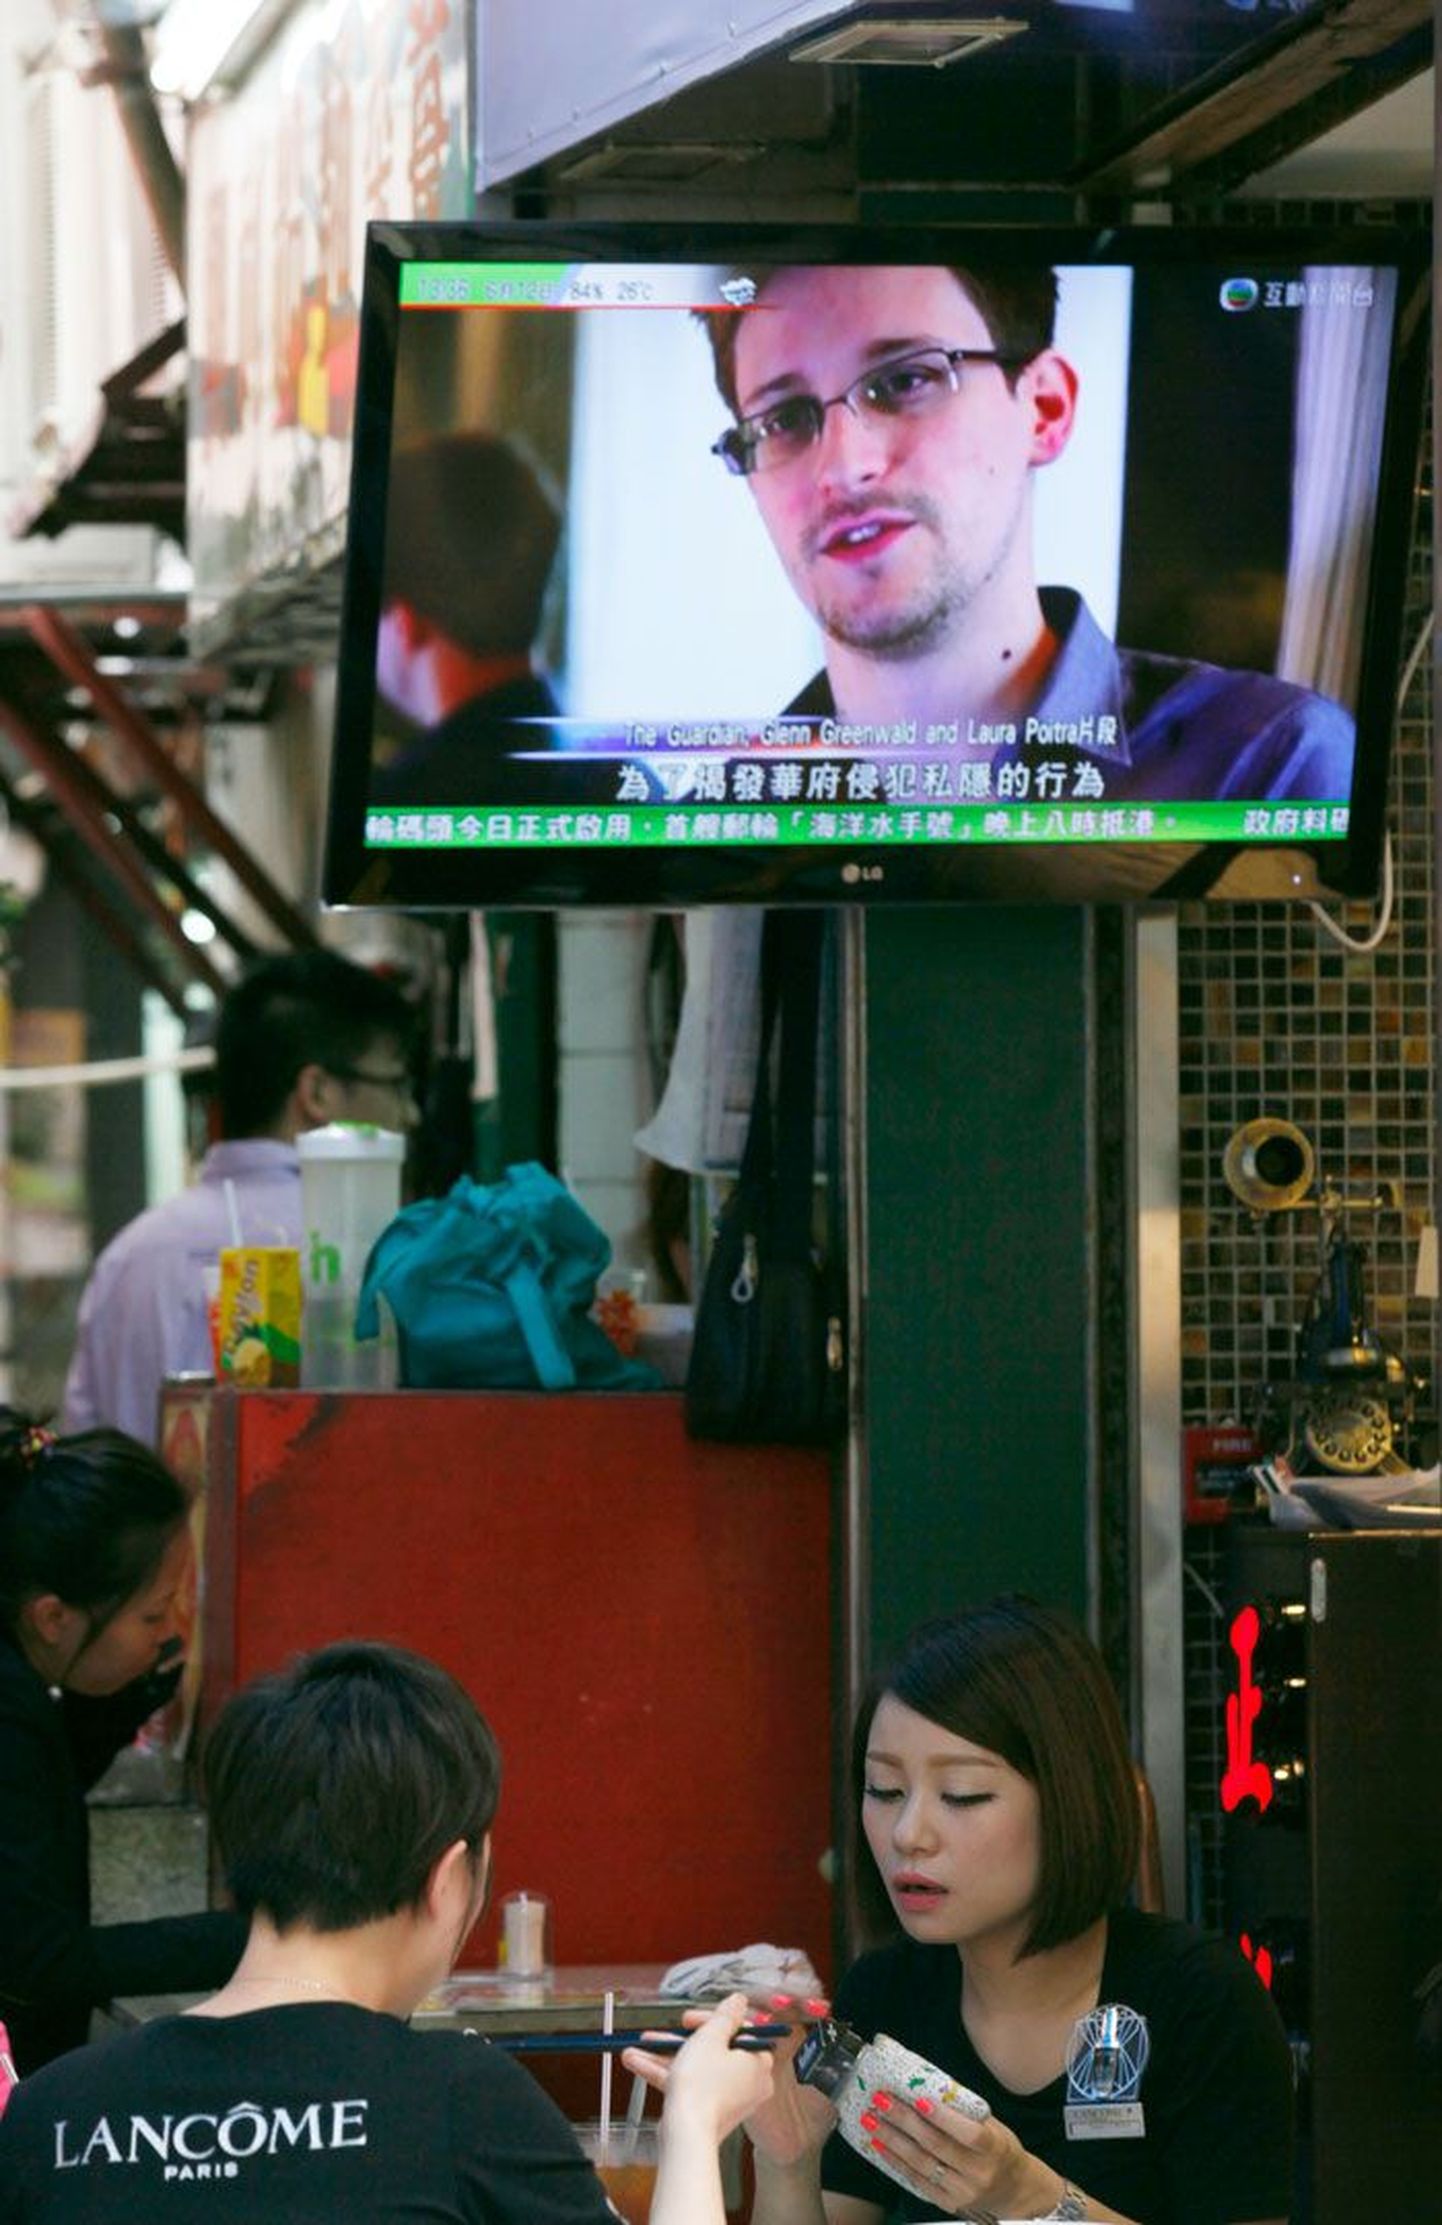 Hongkongi restoran eile, televiisorist tulevad uudised linnas redutavast Edward Snowdenist.